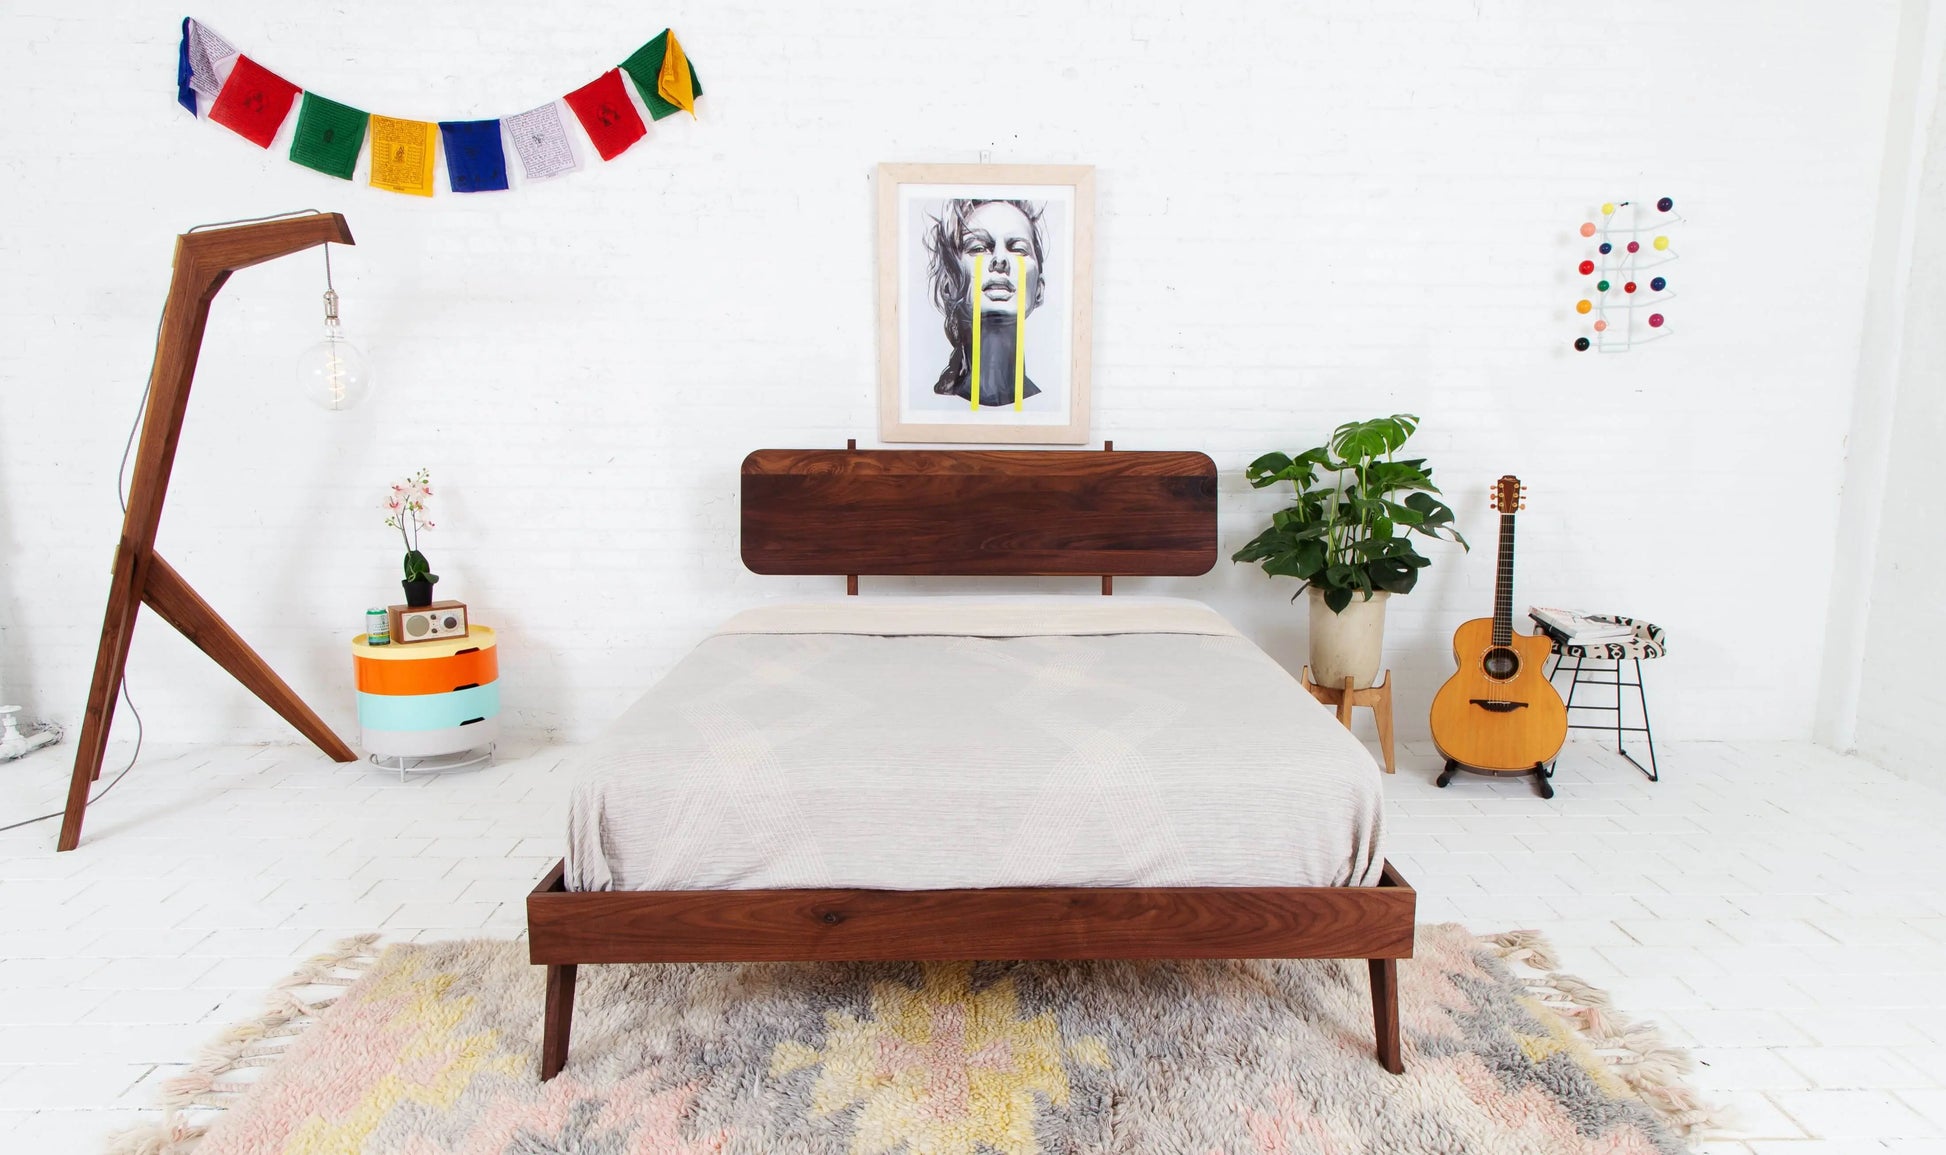 "Designer modern walnut bed frame"